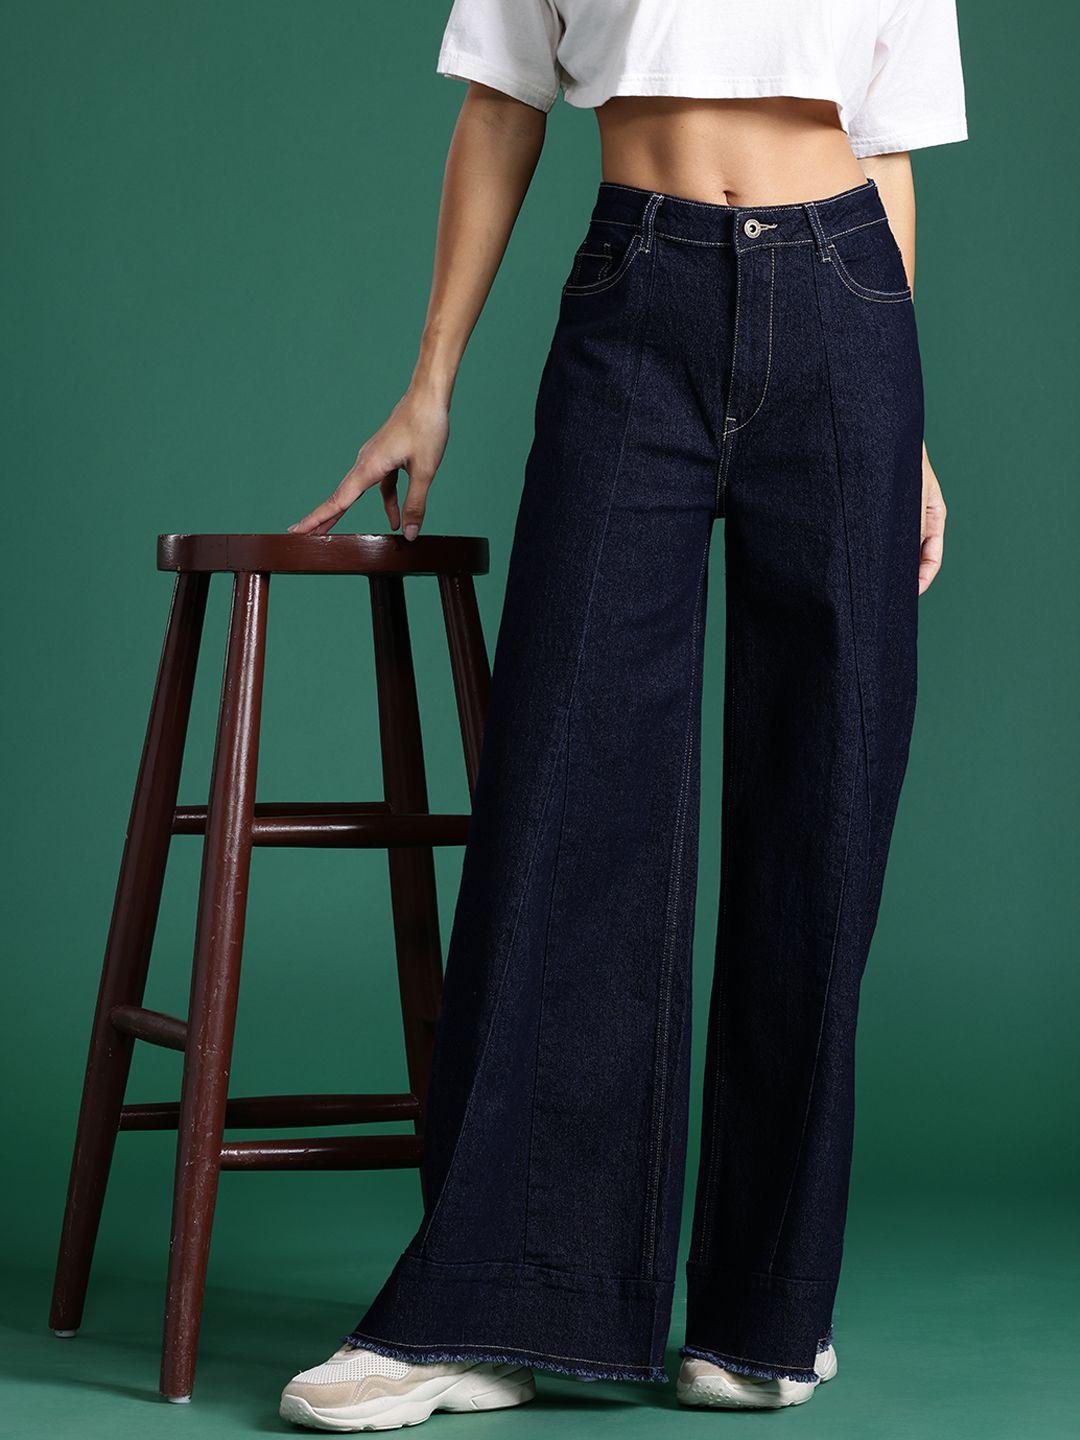 dressberry-women-wide-leg-panelled-jeans